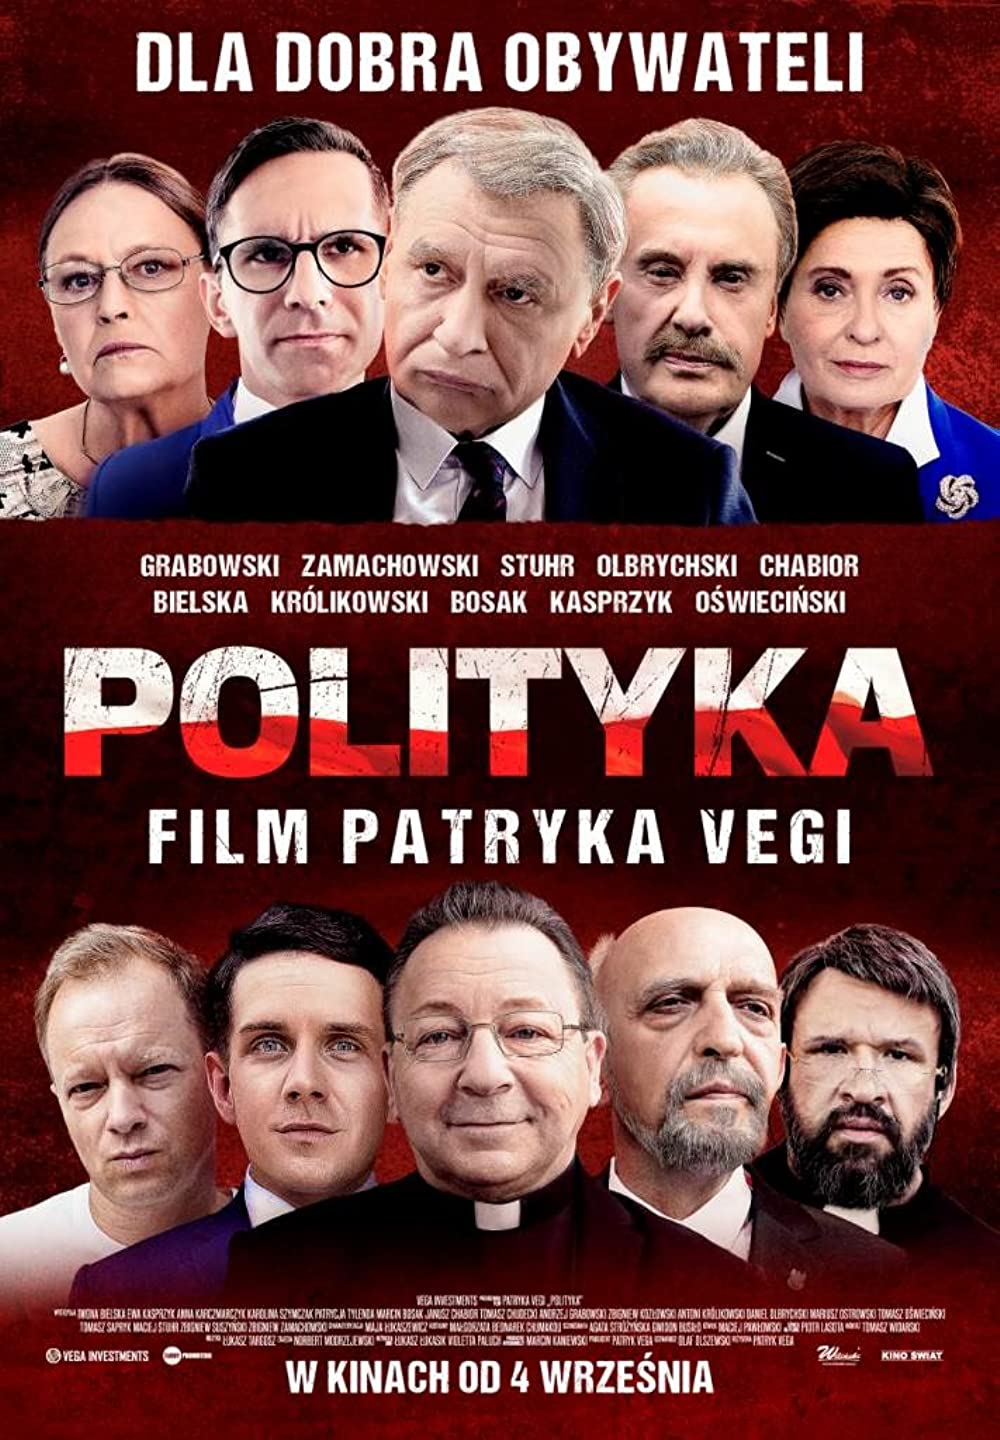 Filmbeschreibung zu Polityka